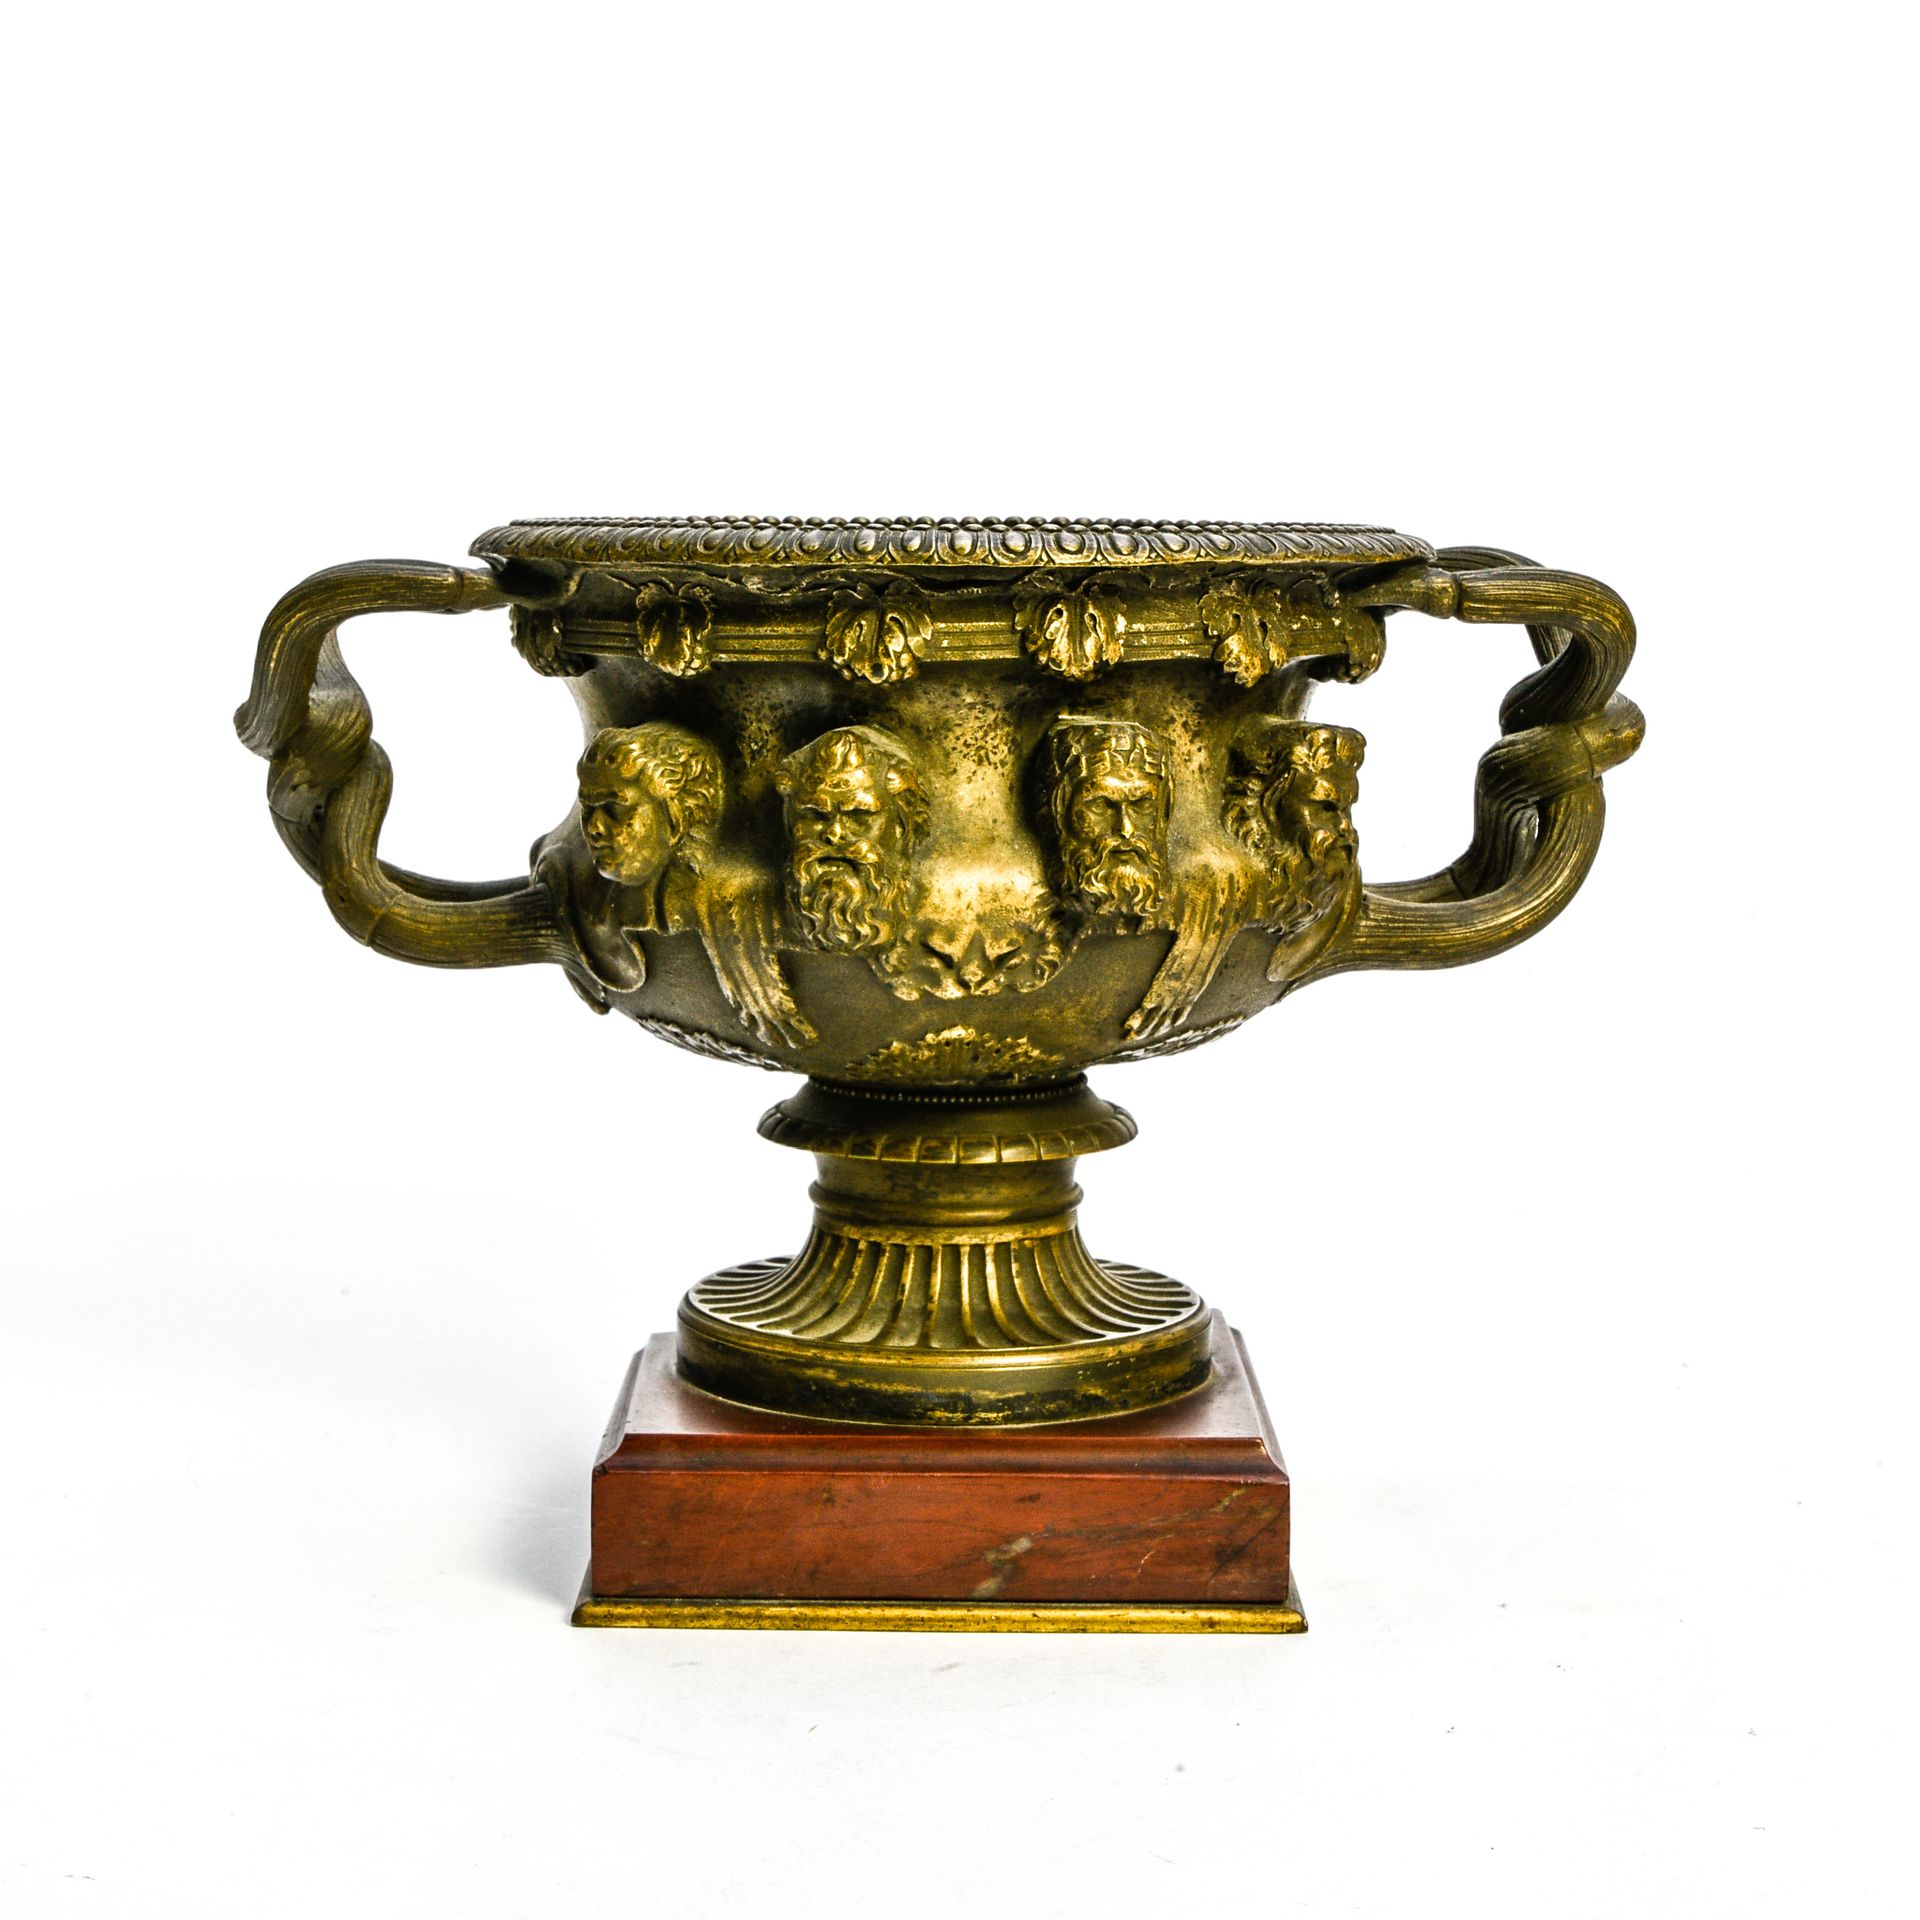 Null 19世纪末的作品

华威杯



带有金棕色铜锈的青铜器和大理石底座

与大理石发生意外的高度：15厘米